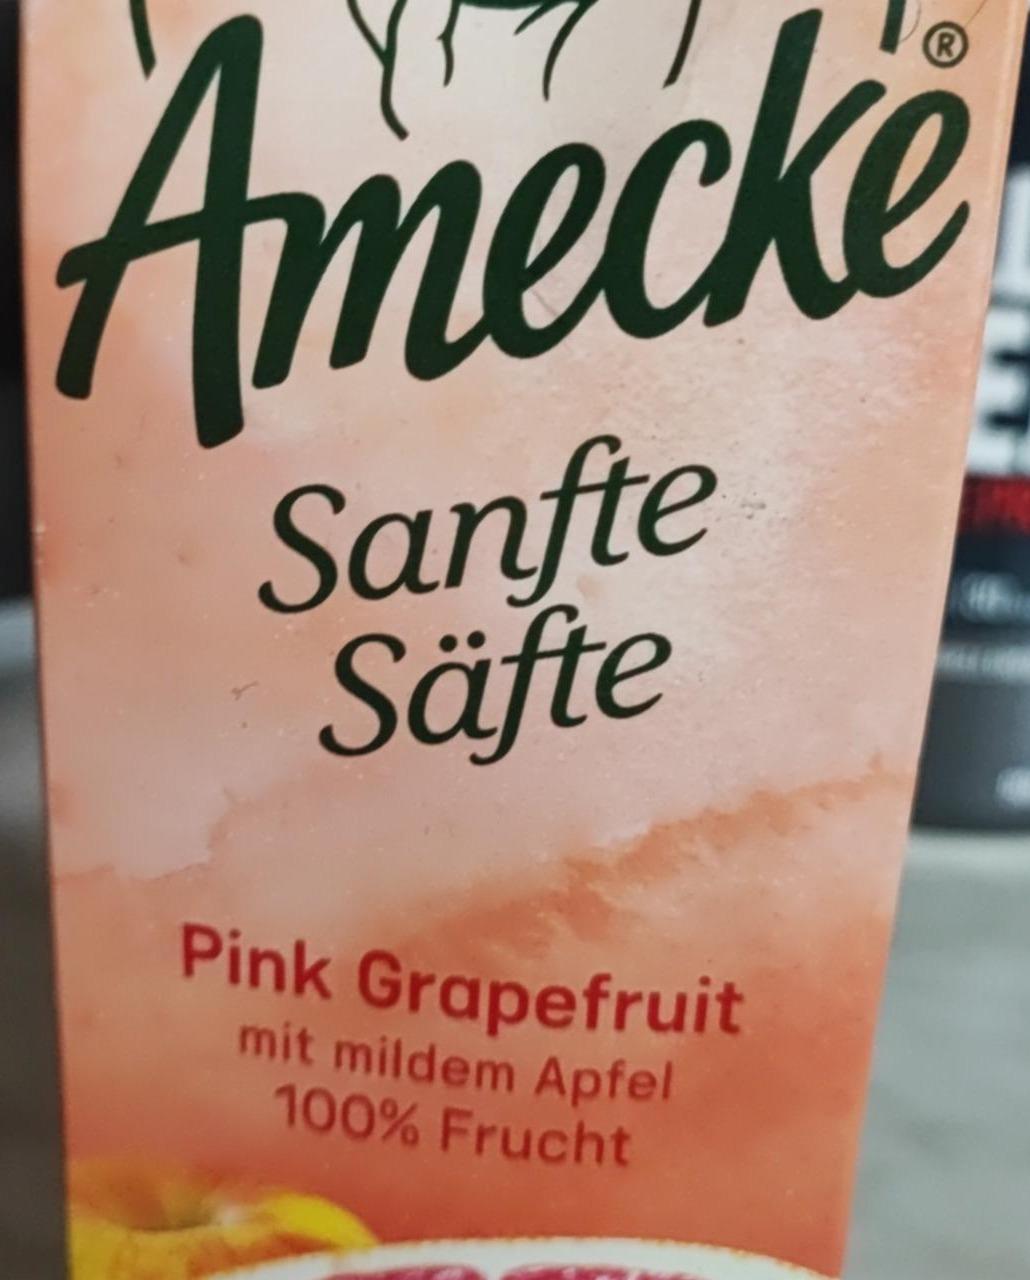 Fotografie - Sanfte Säfte Pink Grapefruit mit mildem Apfel Amecke